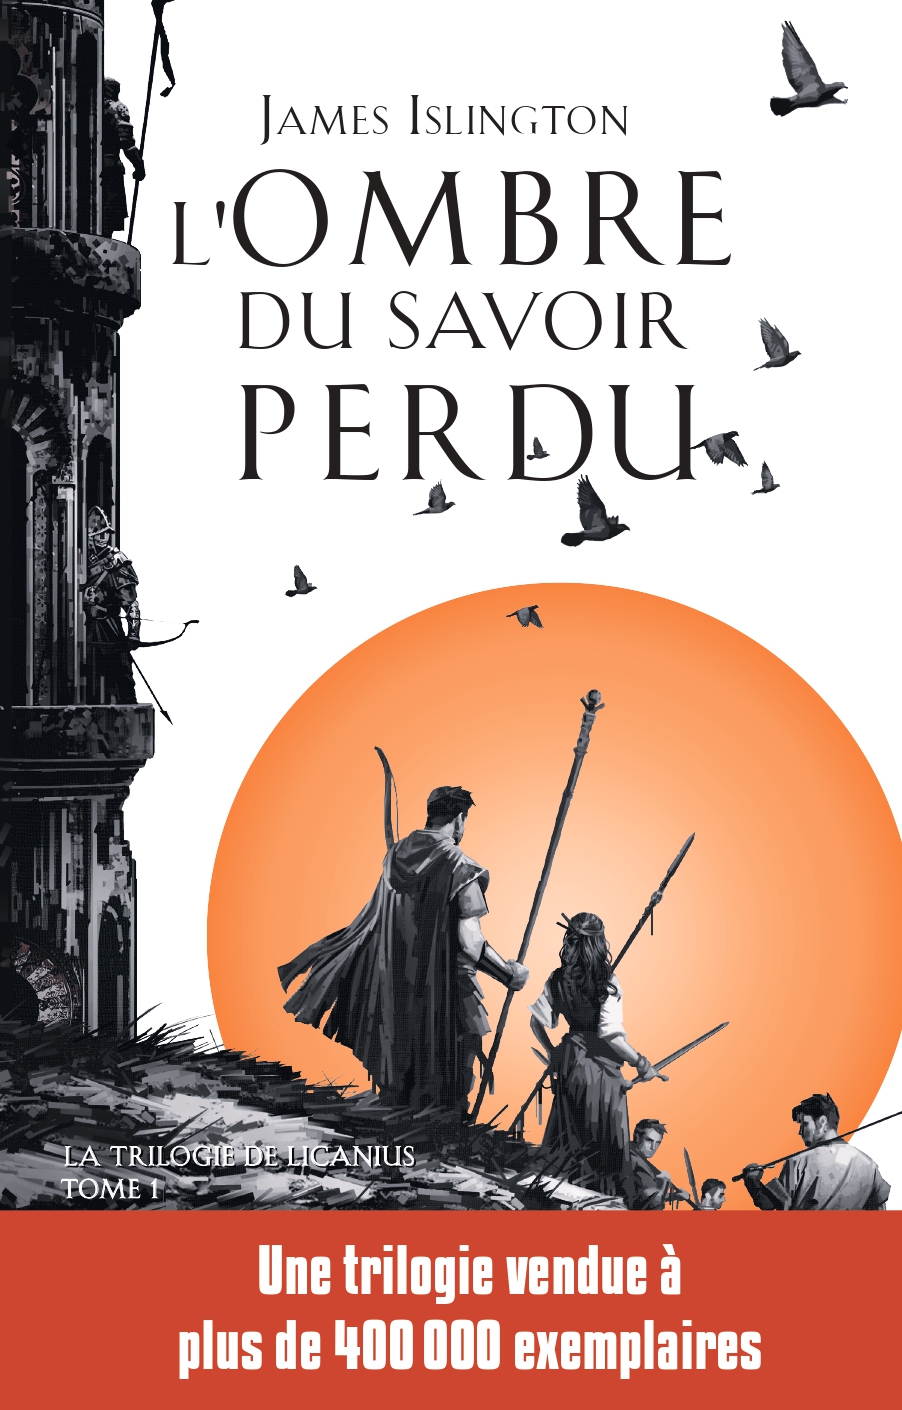 Premier Voyage Illustration originale - La Passe-miroir - Julien Delval